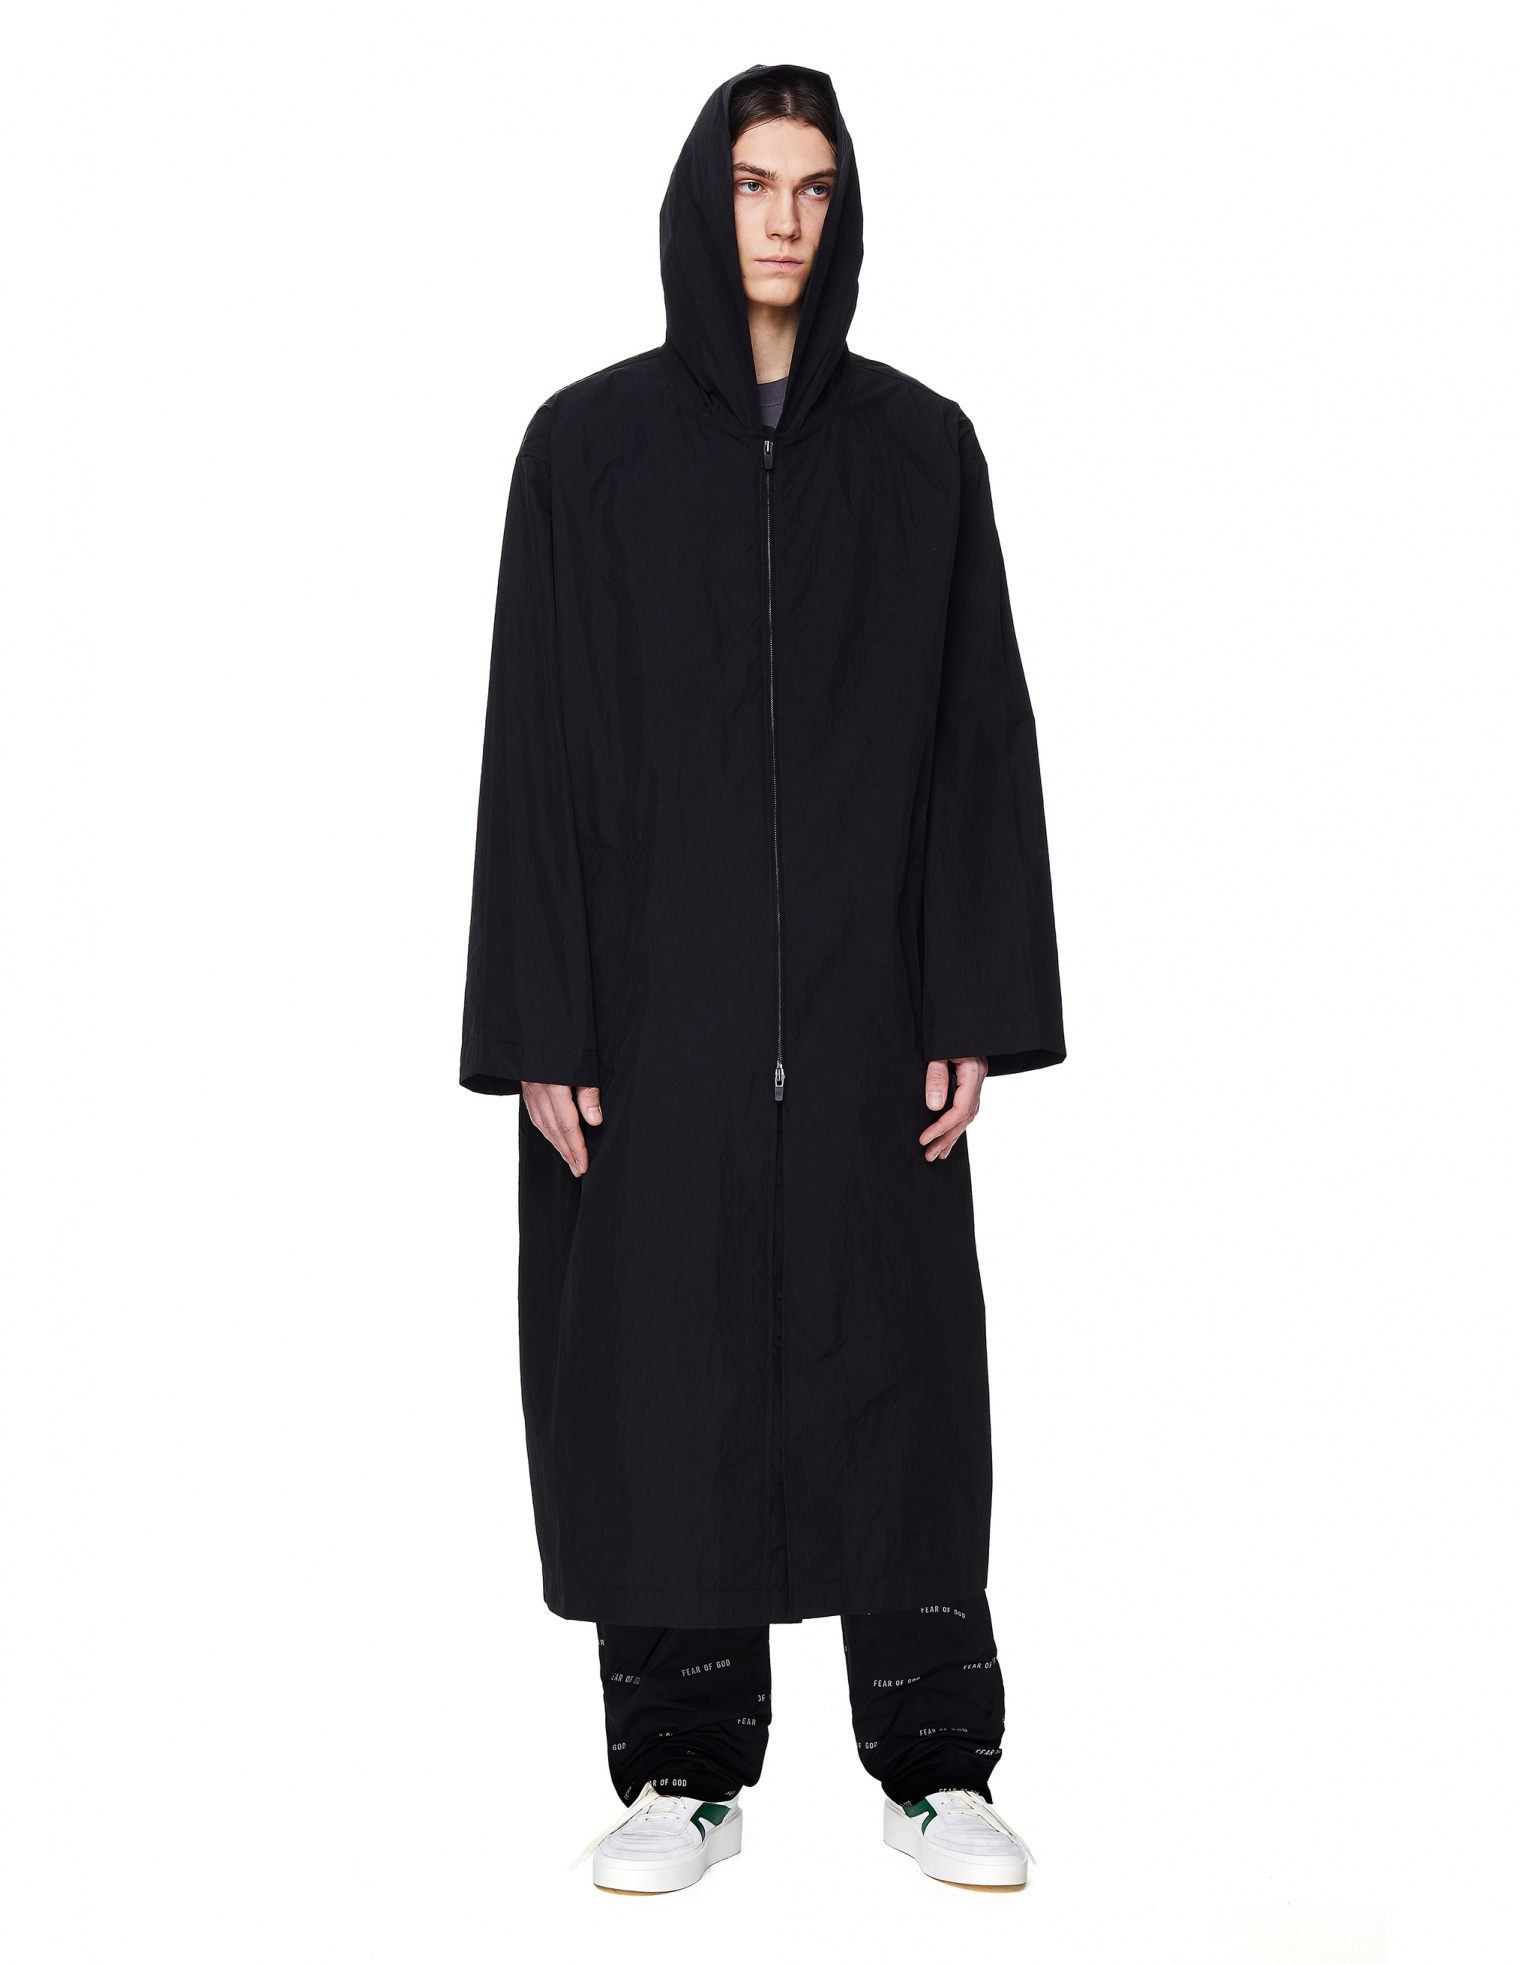 Buy Fear of God men black nylon hooded reflective logo raincoat for $648  online on SV77